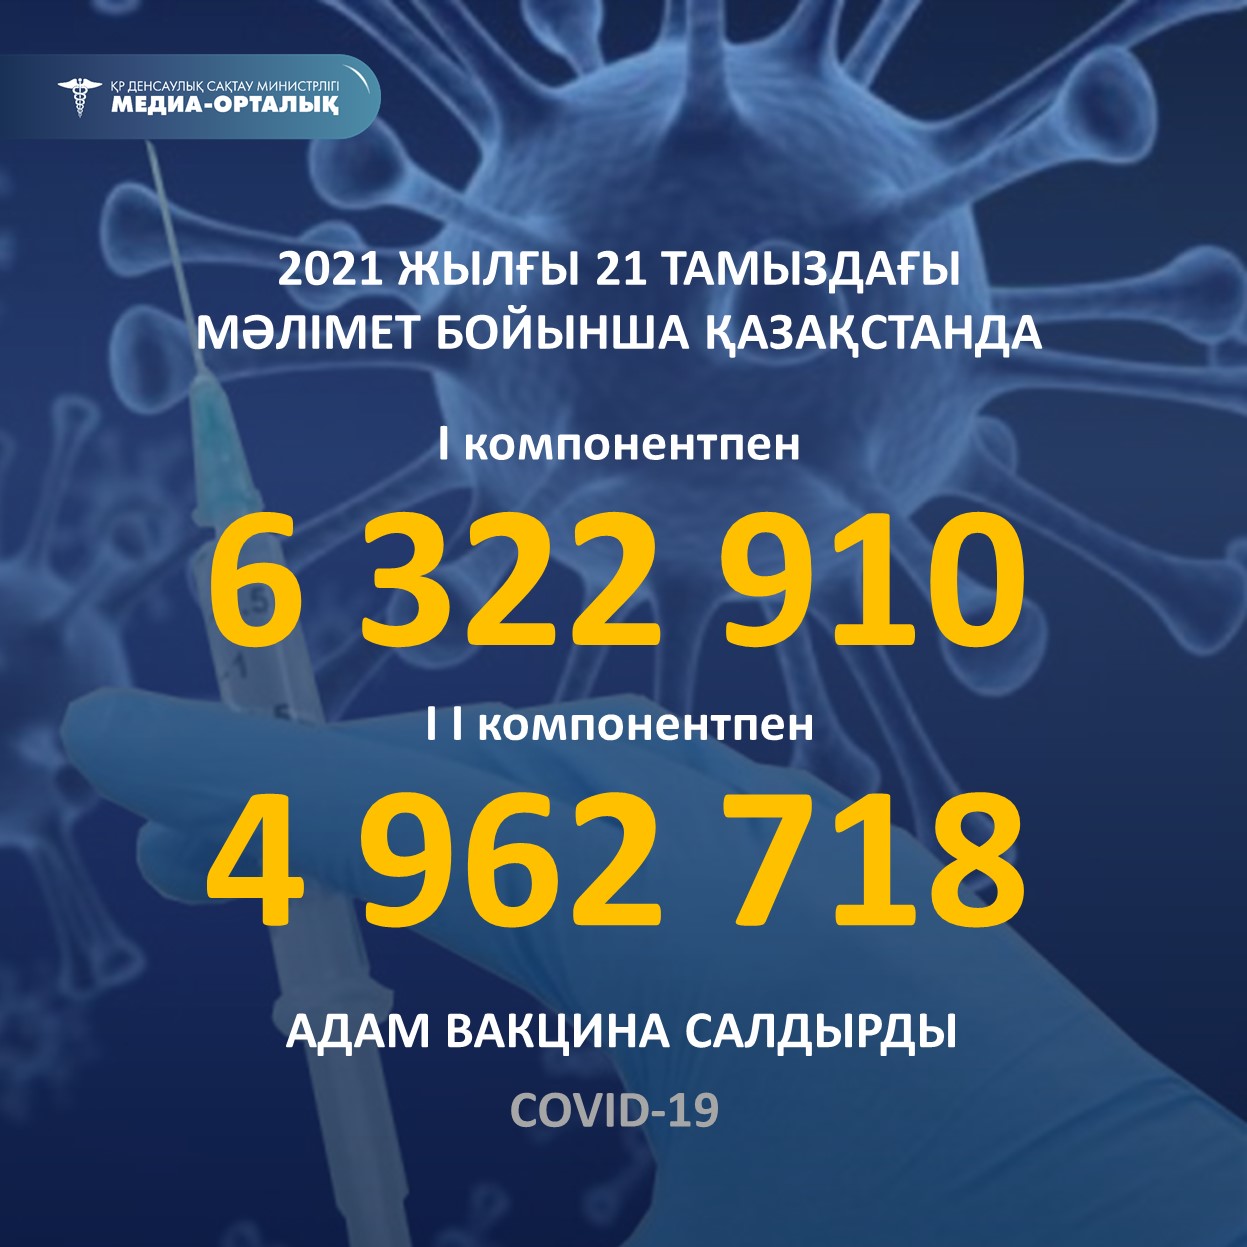 2021 жылғы 21 тамыздағы мәлімет бойынша Қазақстанда I компонентпен 6 322 910 адам вакцина салдырды, II компонентпен 4 962 718 адам.